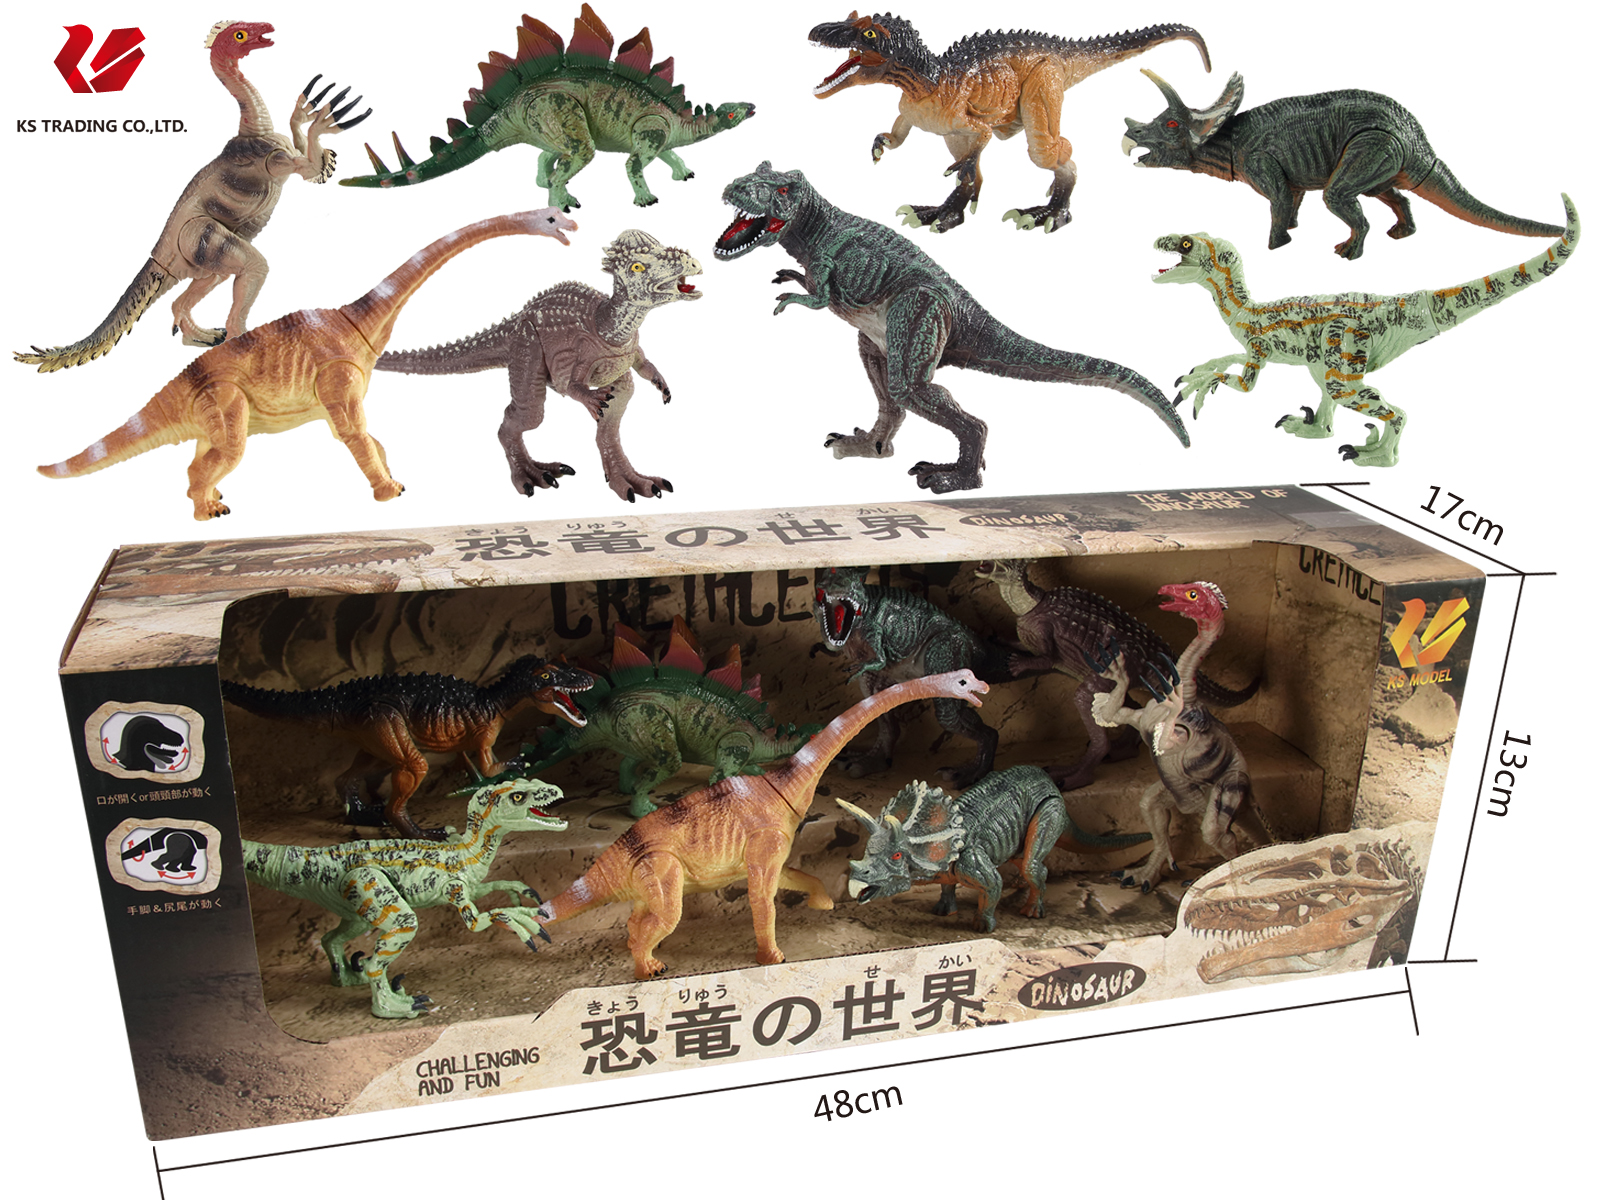 プレゼントに大人気 リアルで満足間違いなし 恐竜おもちゃ 交換無料 恐竜フィギア ダイナソーモデル 8体セットX'masプレゼントや誕生日プレゼントに大人気 送料無料 安心の定価販売 子供 キッズ ギフト 恐竜 フィギュア 人形 DINOSAUR 本格的なリアルフィギュア 可動できる恐竜フィギュア おもちゃ MODEL 恐竜の世界セットA 玩具 可動できる恐竜おもちゃ 模型 フィギア